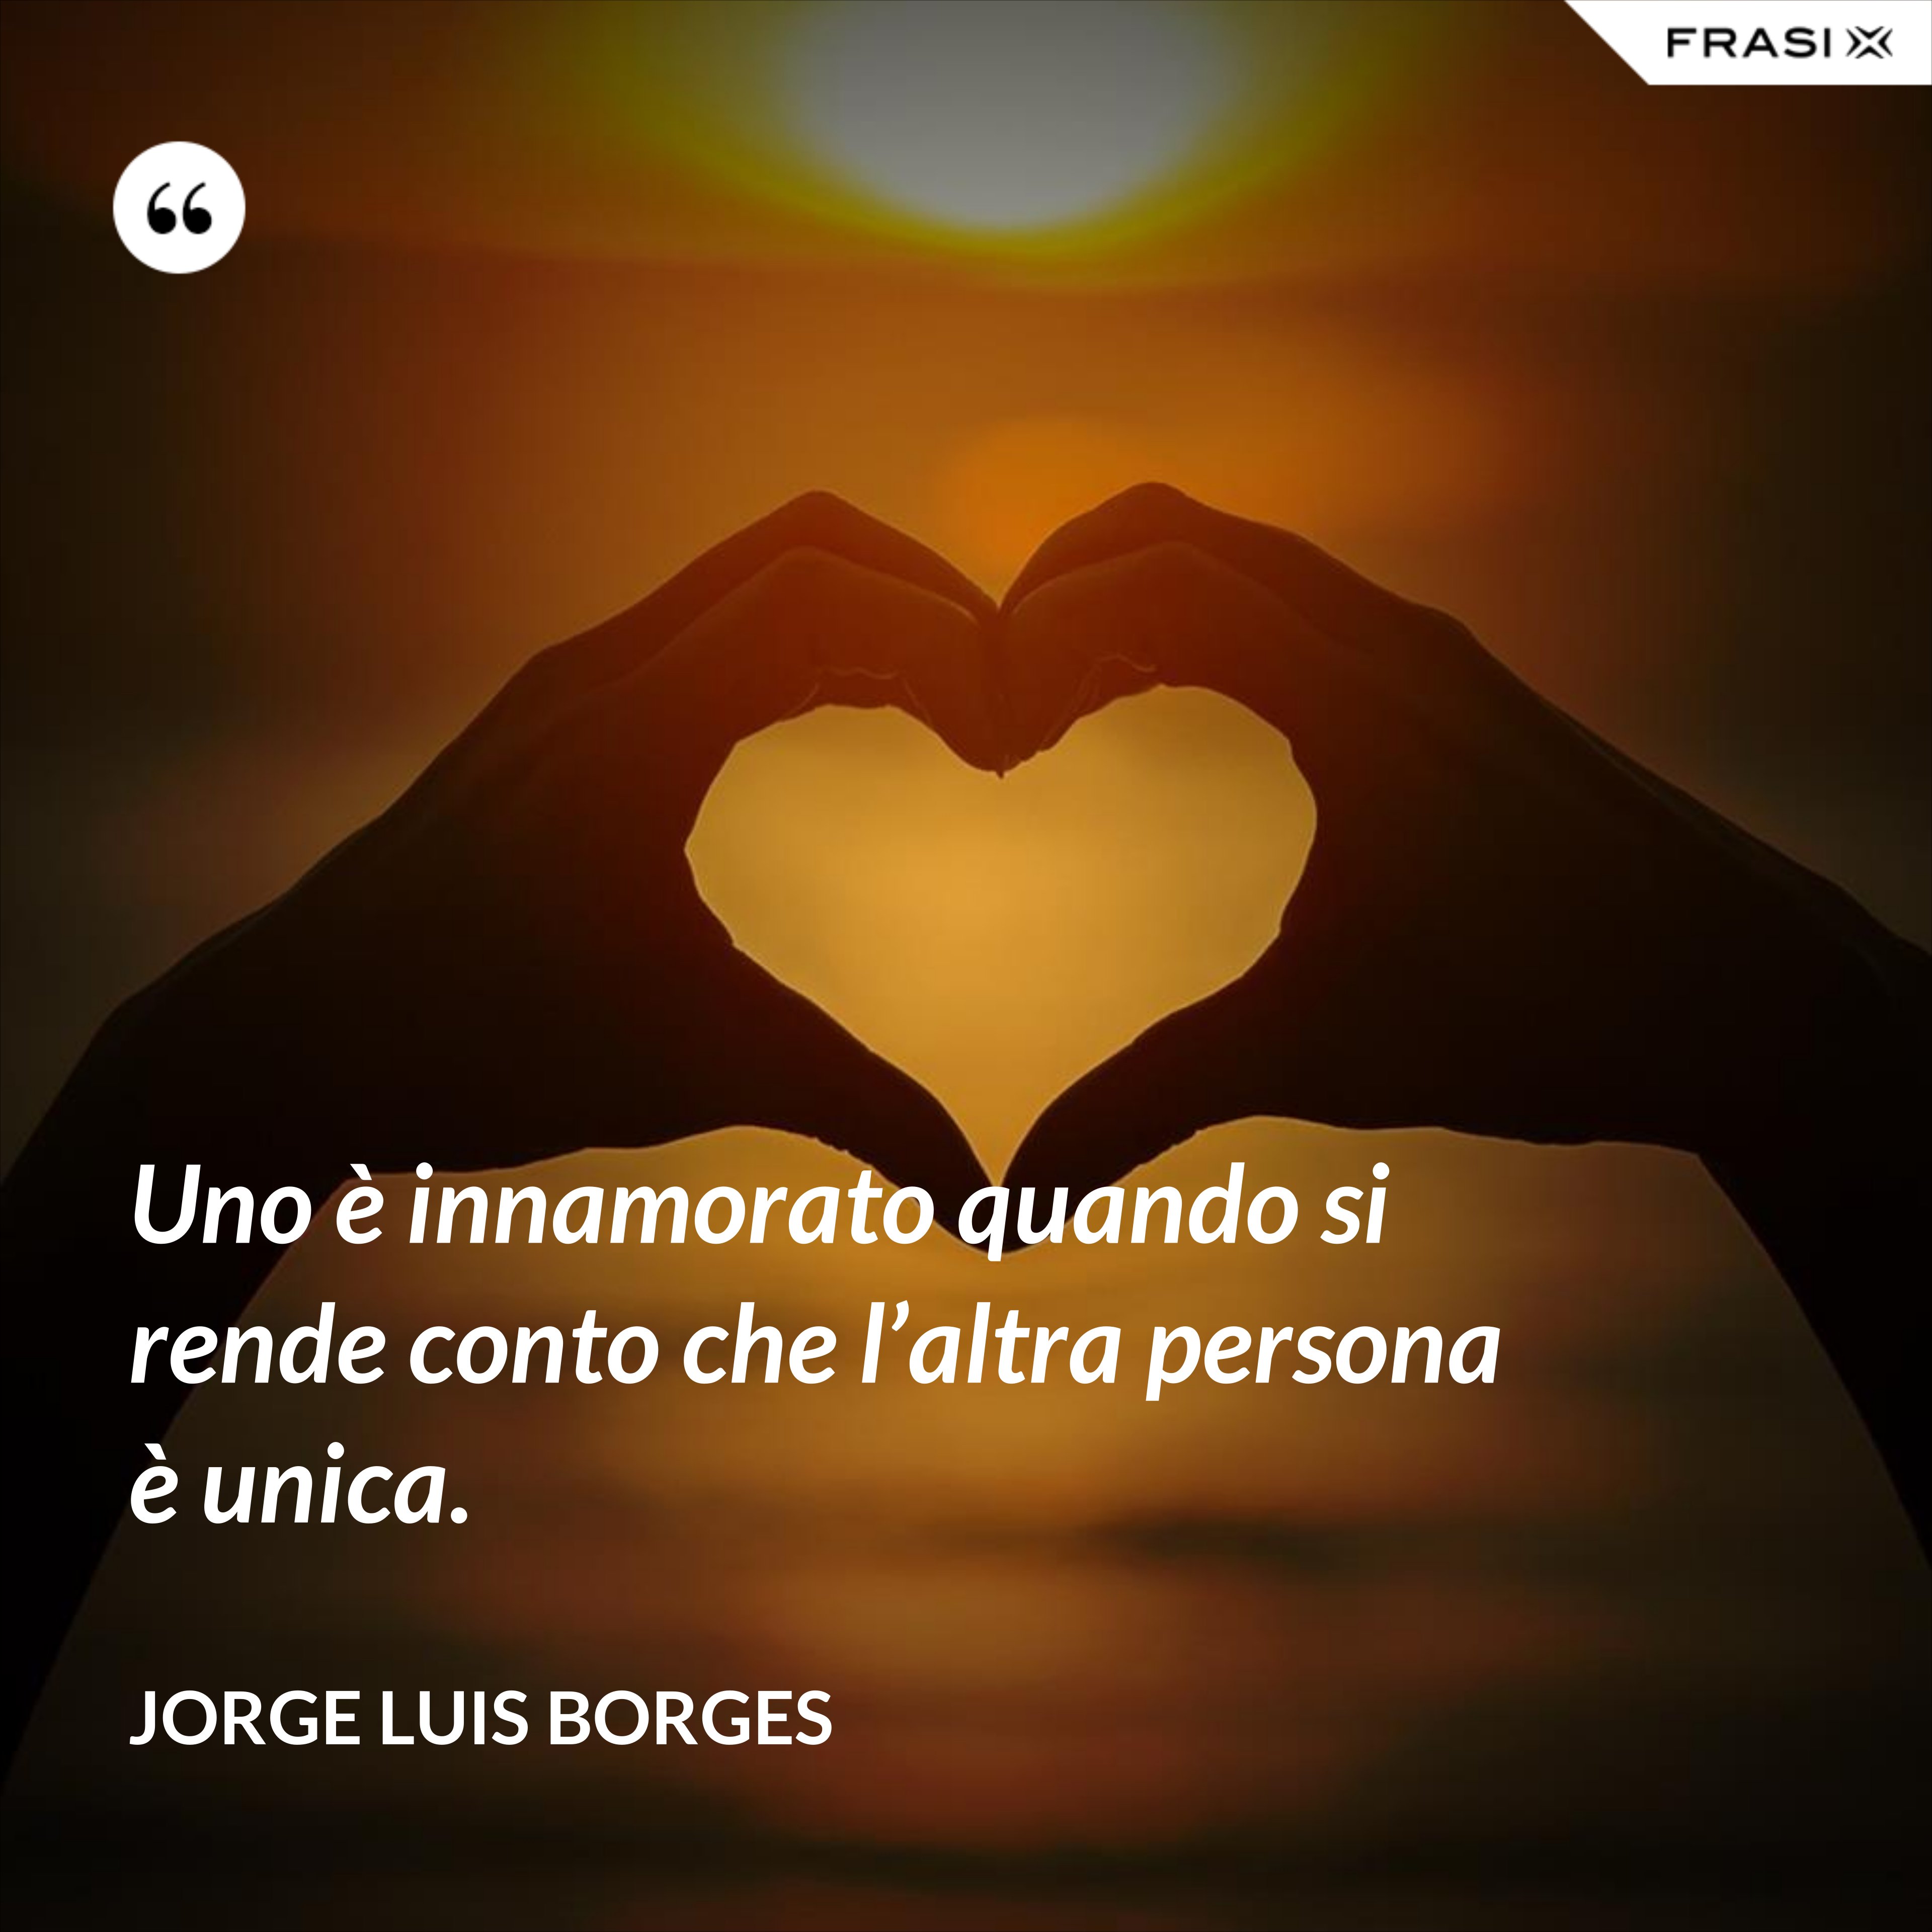 Uno è innamorato quando si rende conto che l’altra persona è unica. - Jorge Luis Borges